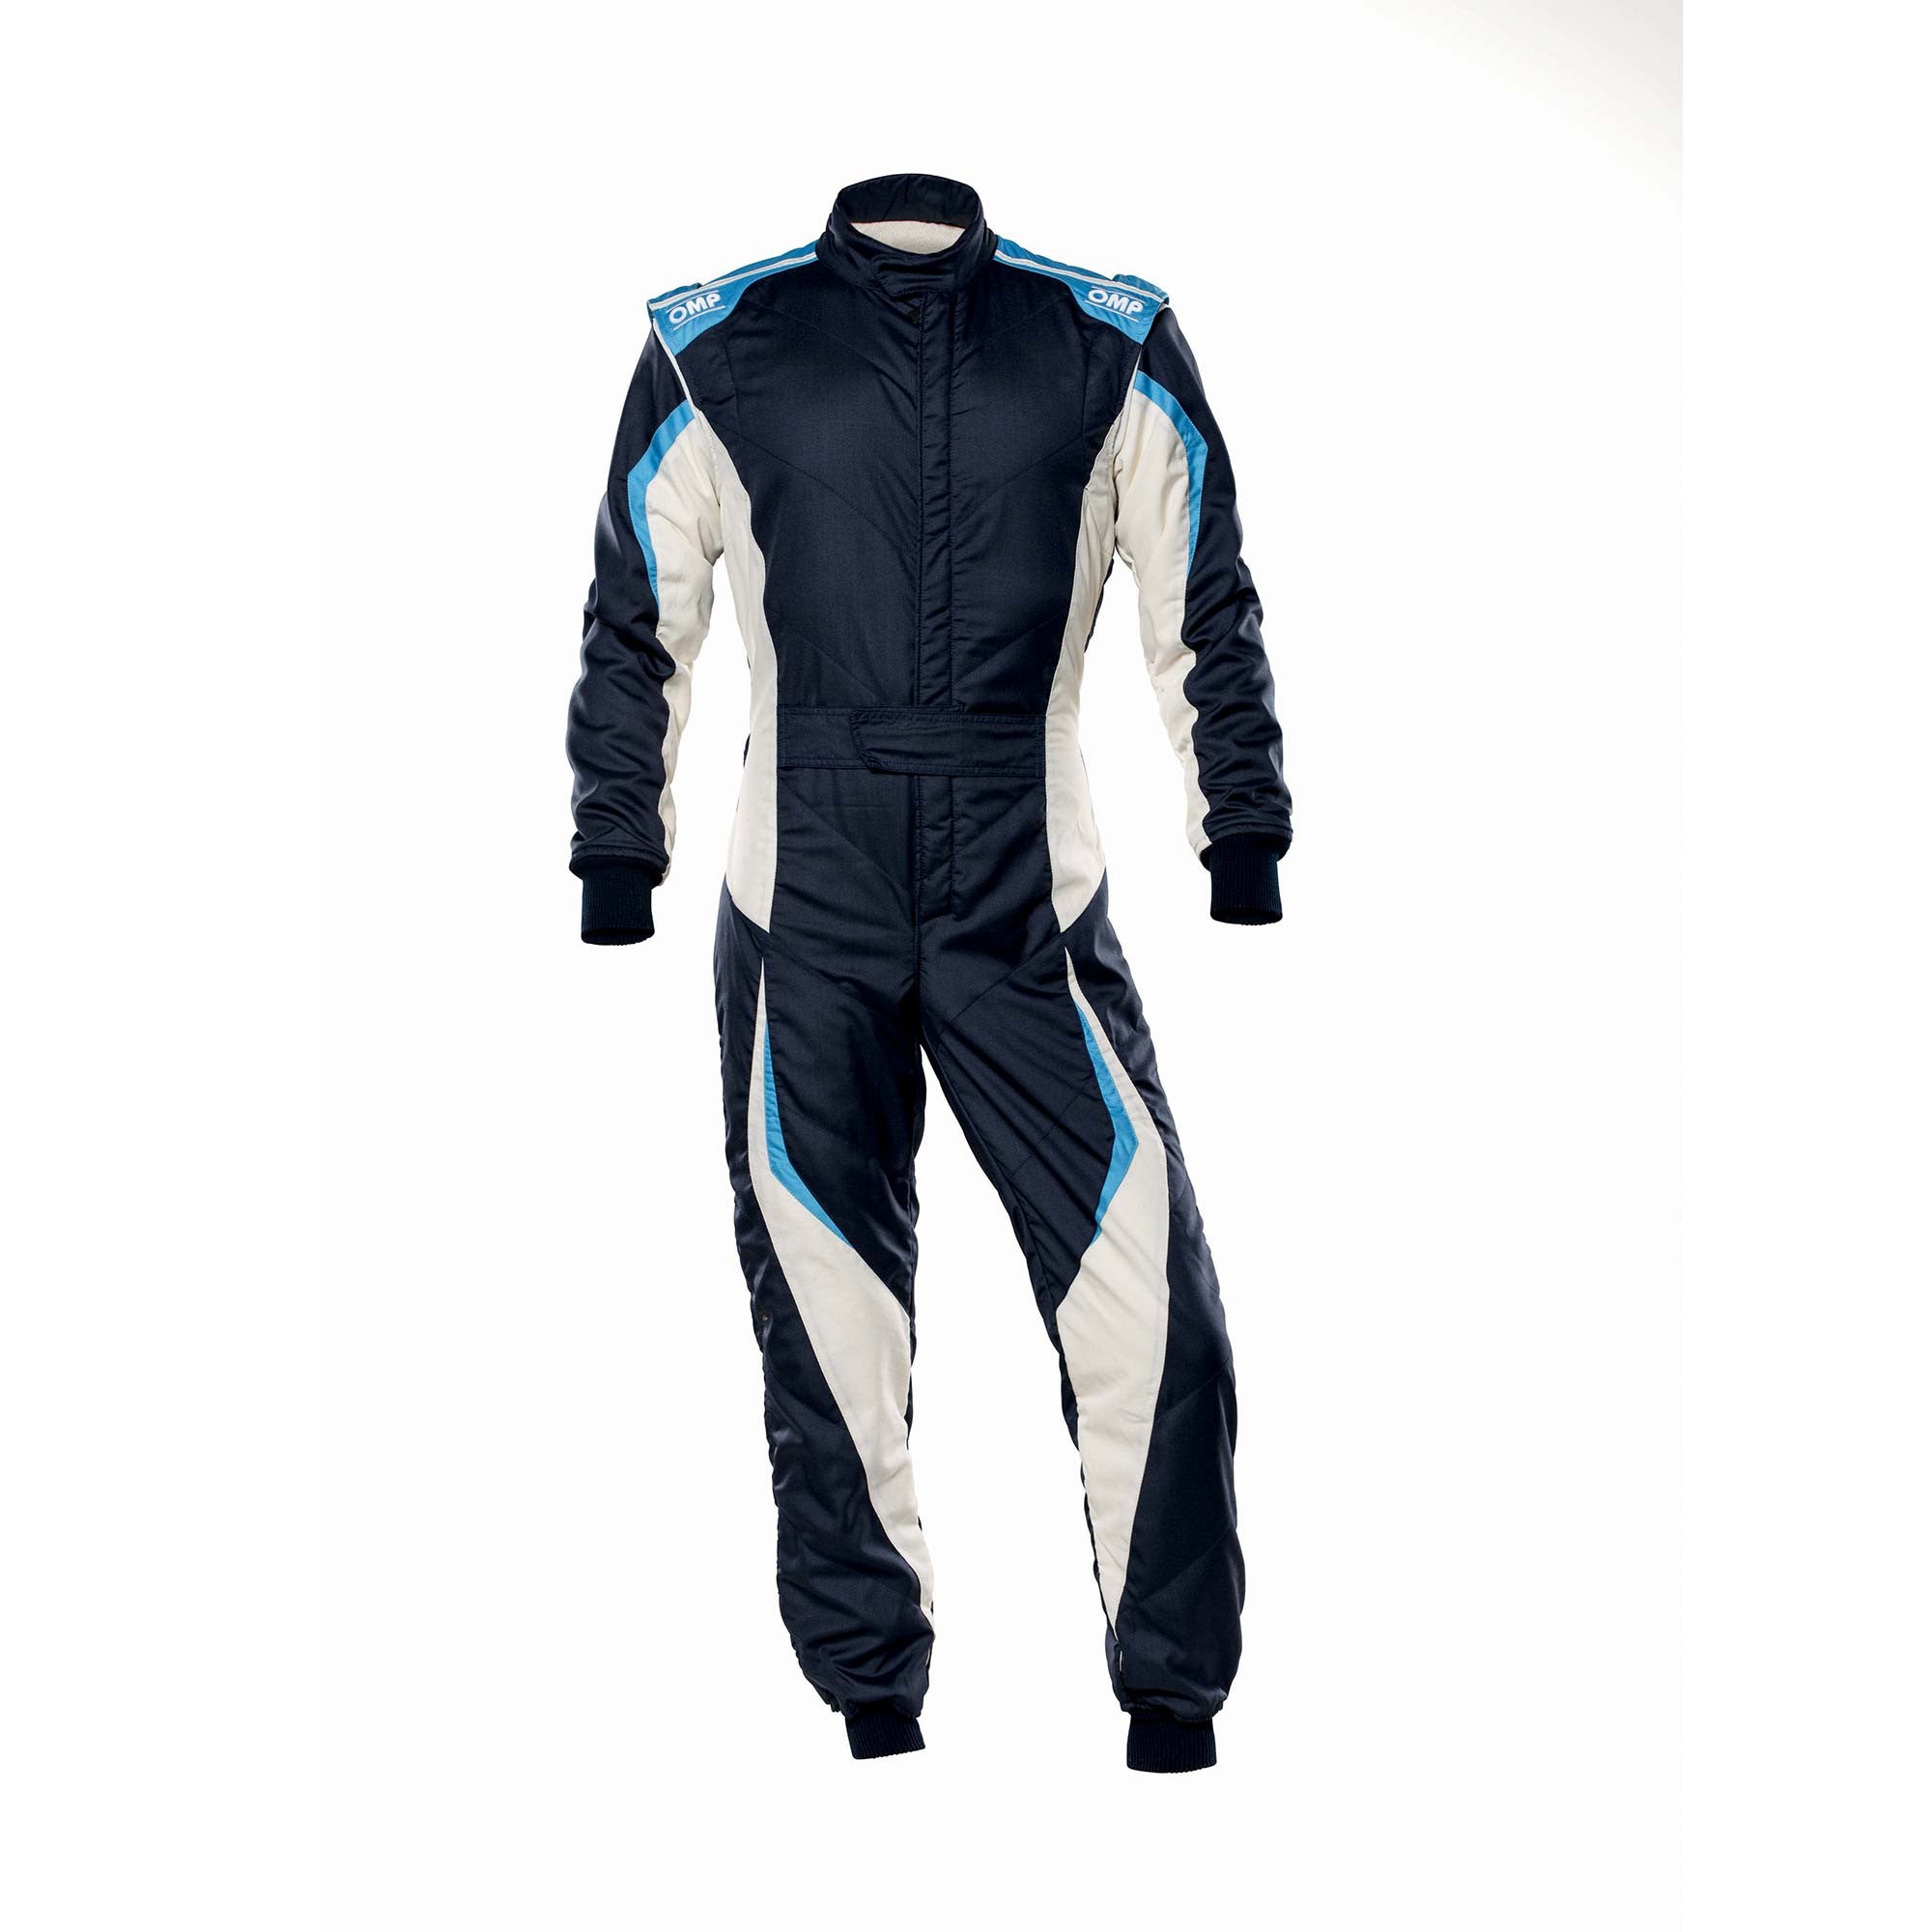 OMP IA0-1859-B01-246-62 Racing suit TECNICA EVO MY2021, FIA 8856-2018, navy blue/white/grey/cyan, size 62 Photo-0 